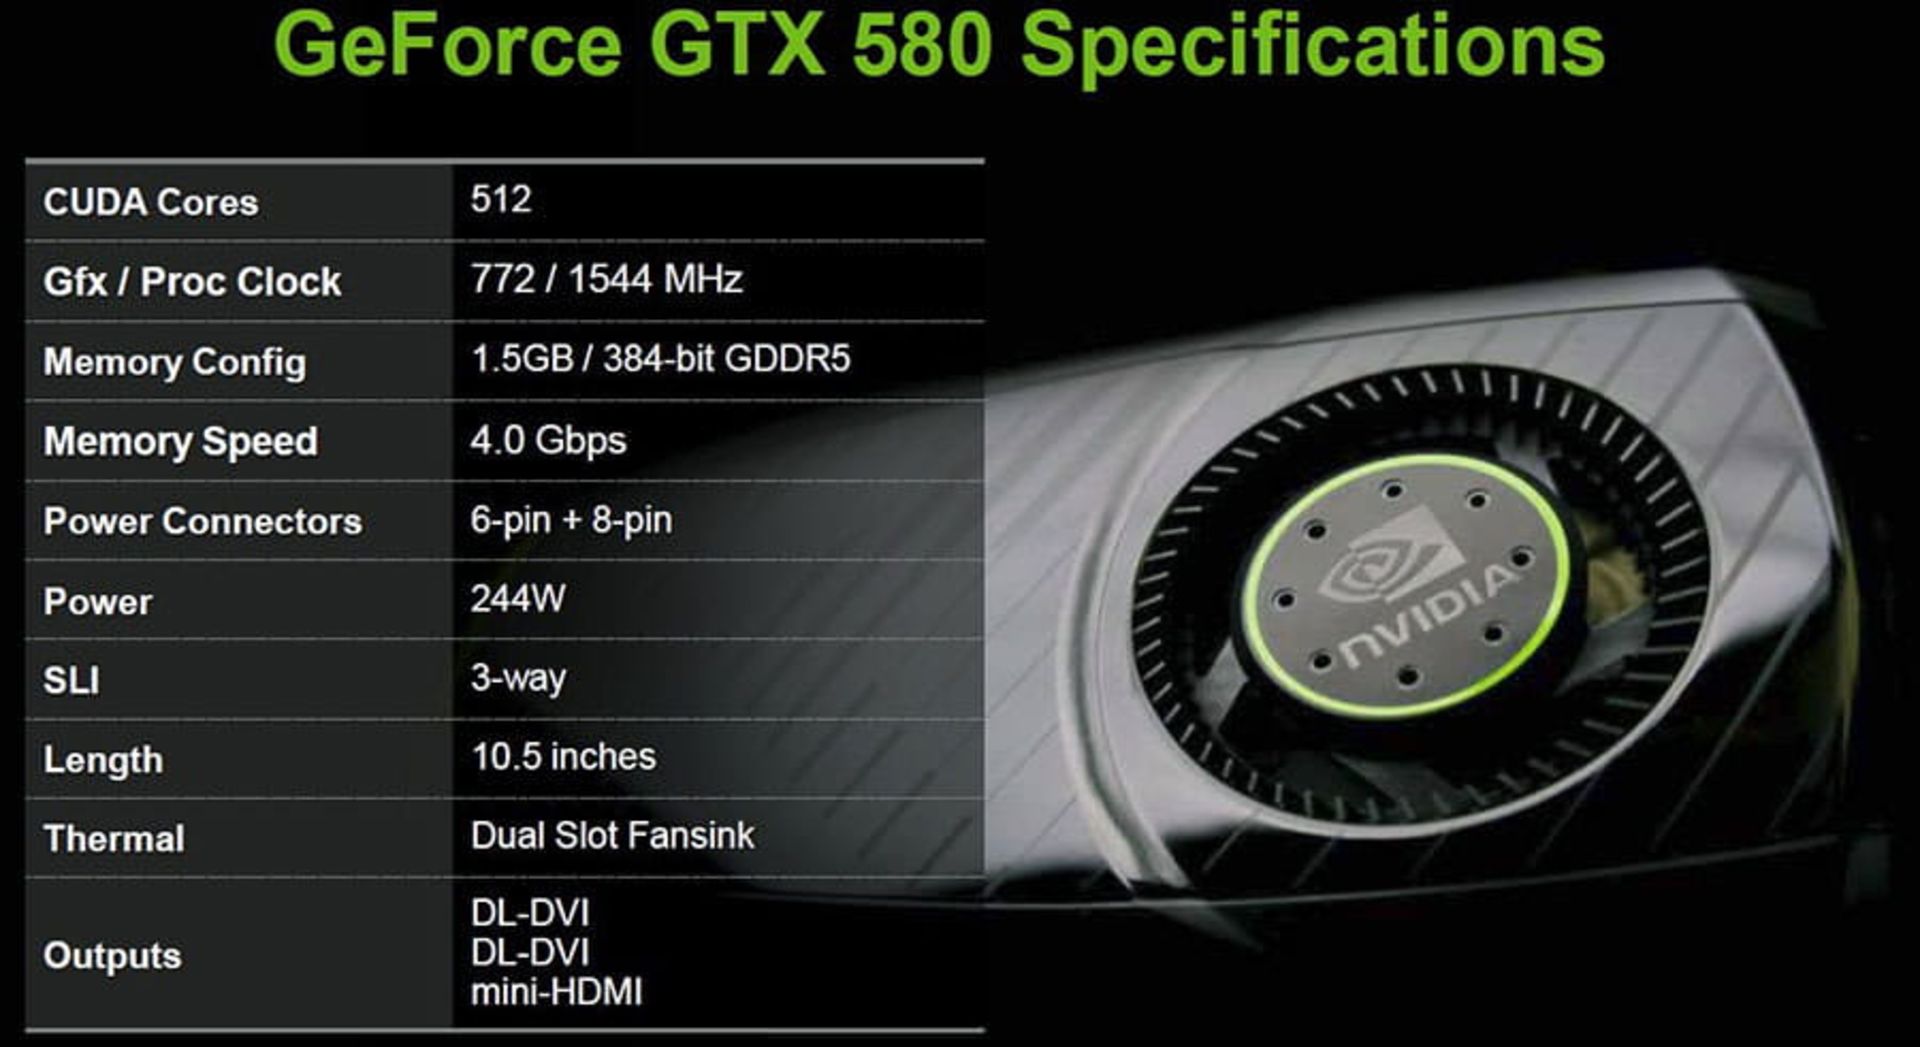 nvidia GTX 580